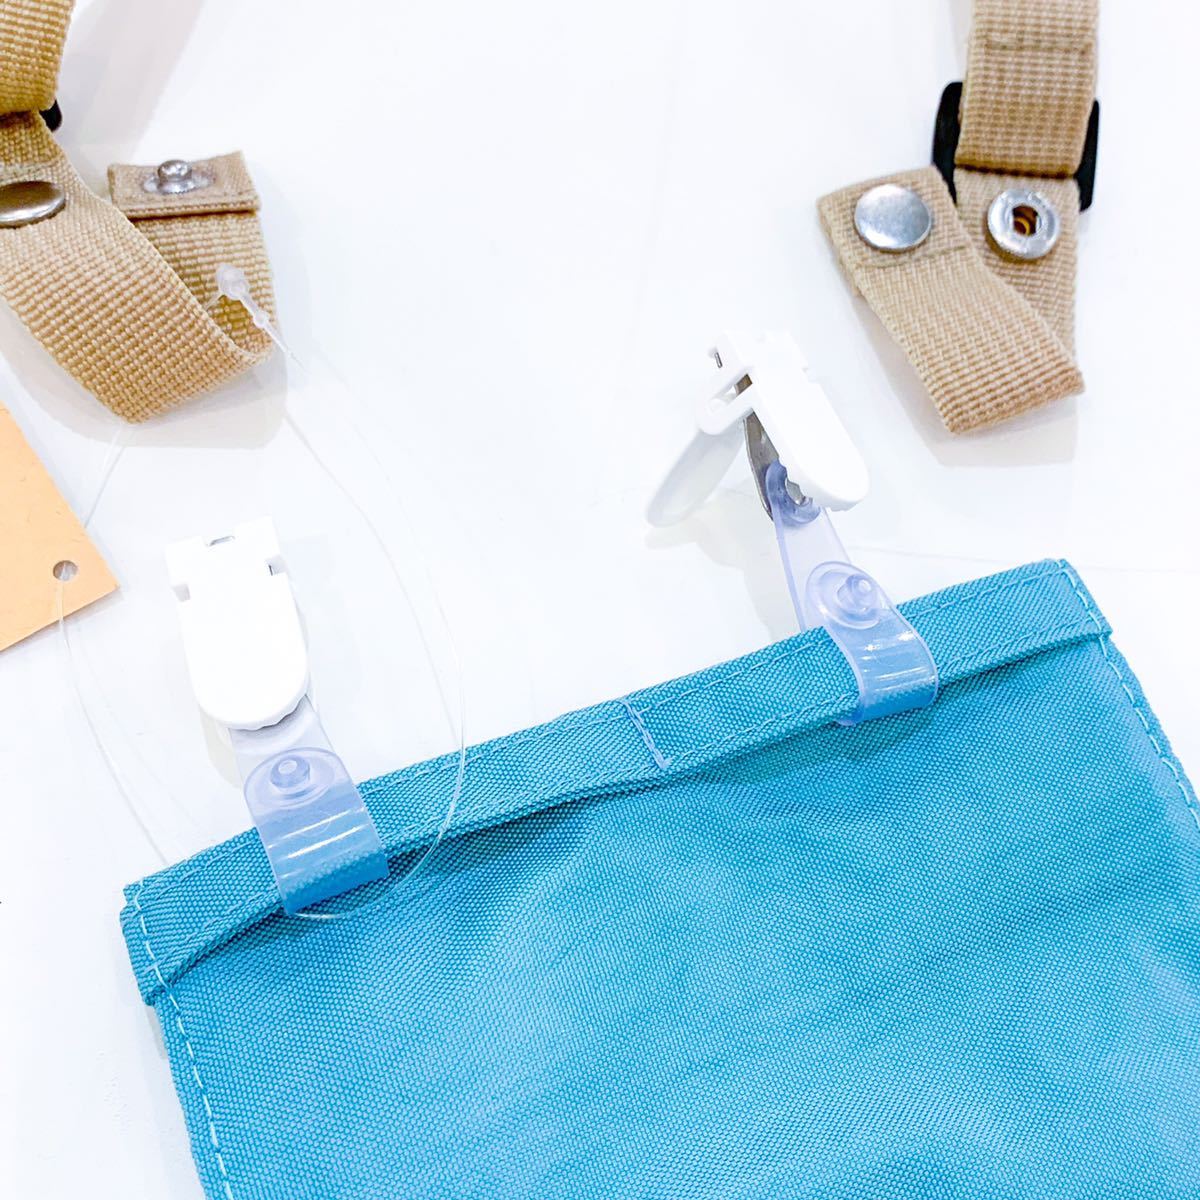 [ новый товар не использовался ]stample штамп ru перемещение карман сумка затонированный голубой плечо небольшая сумочка sakoshu зажим застежка-молния водоотталкивающая отделка 